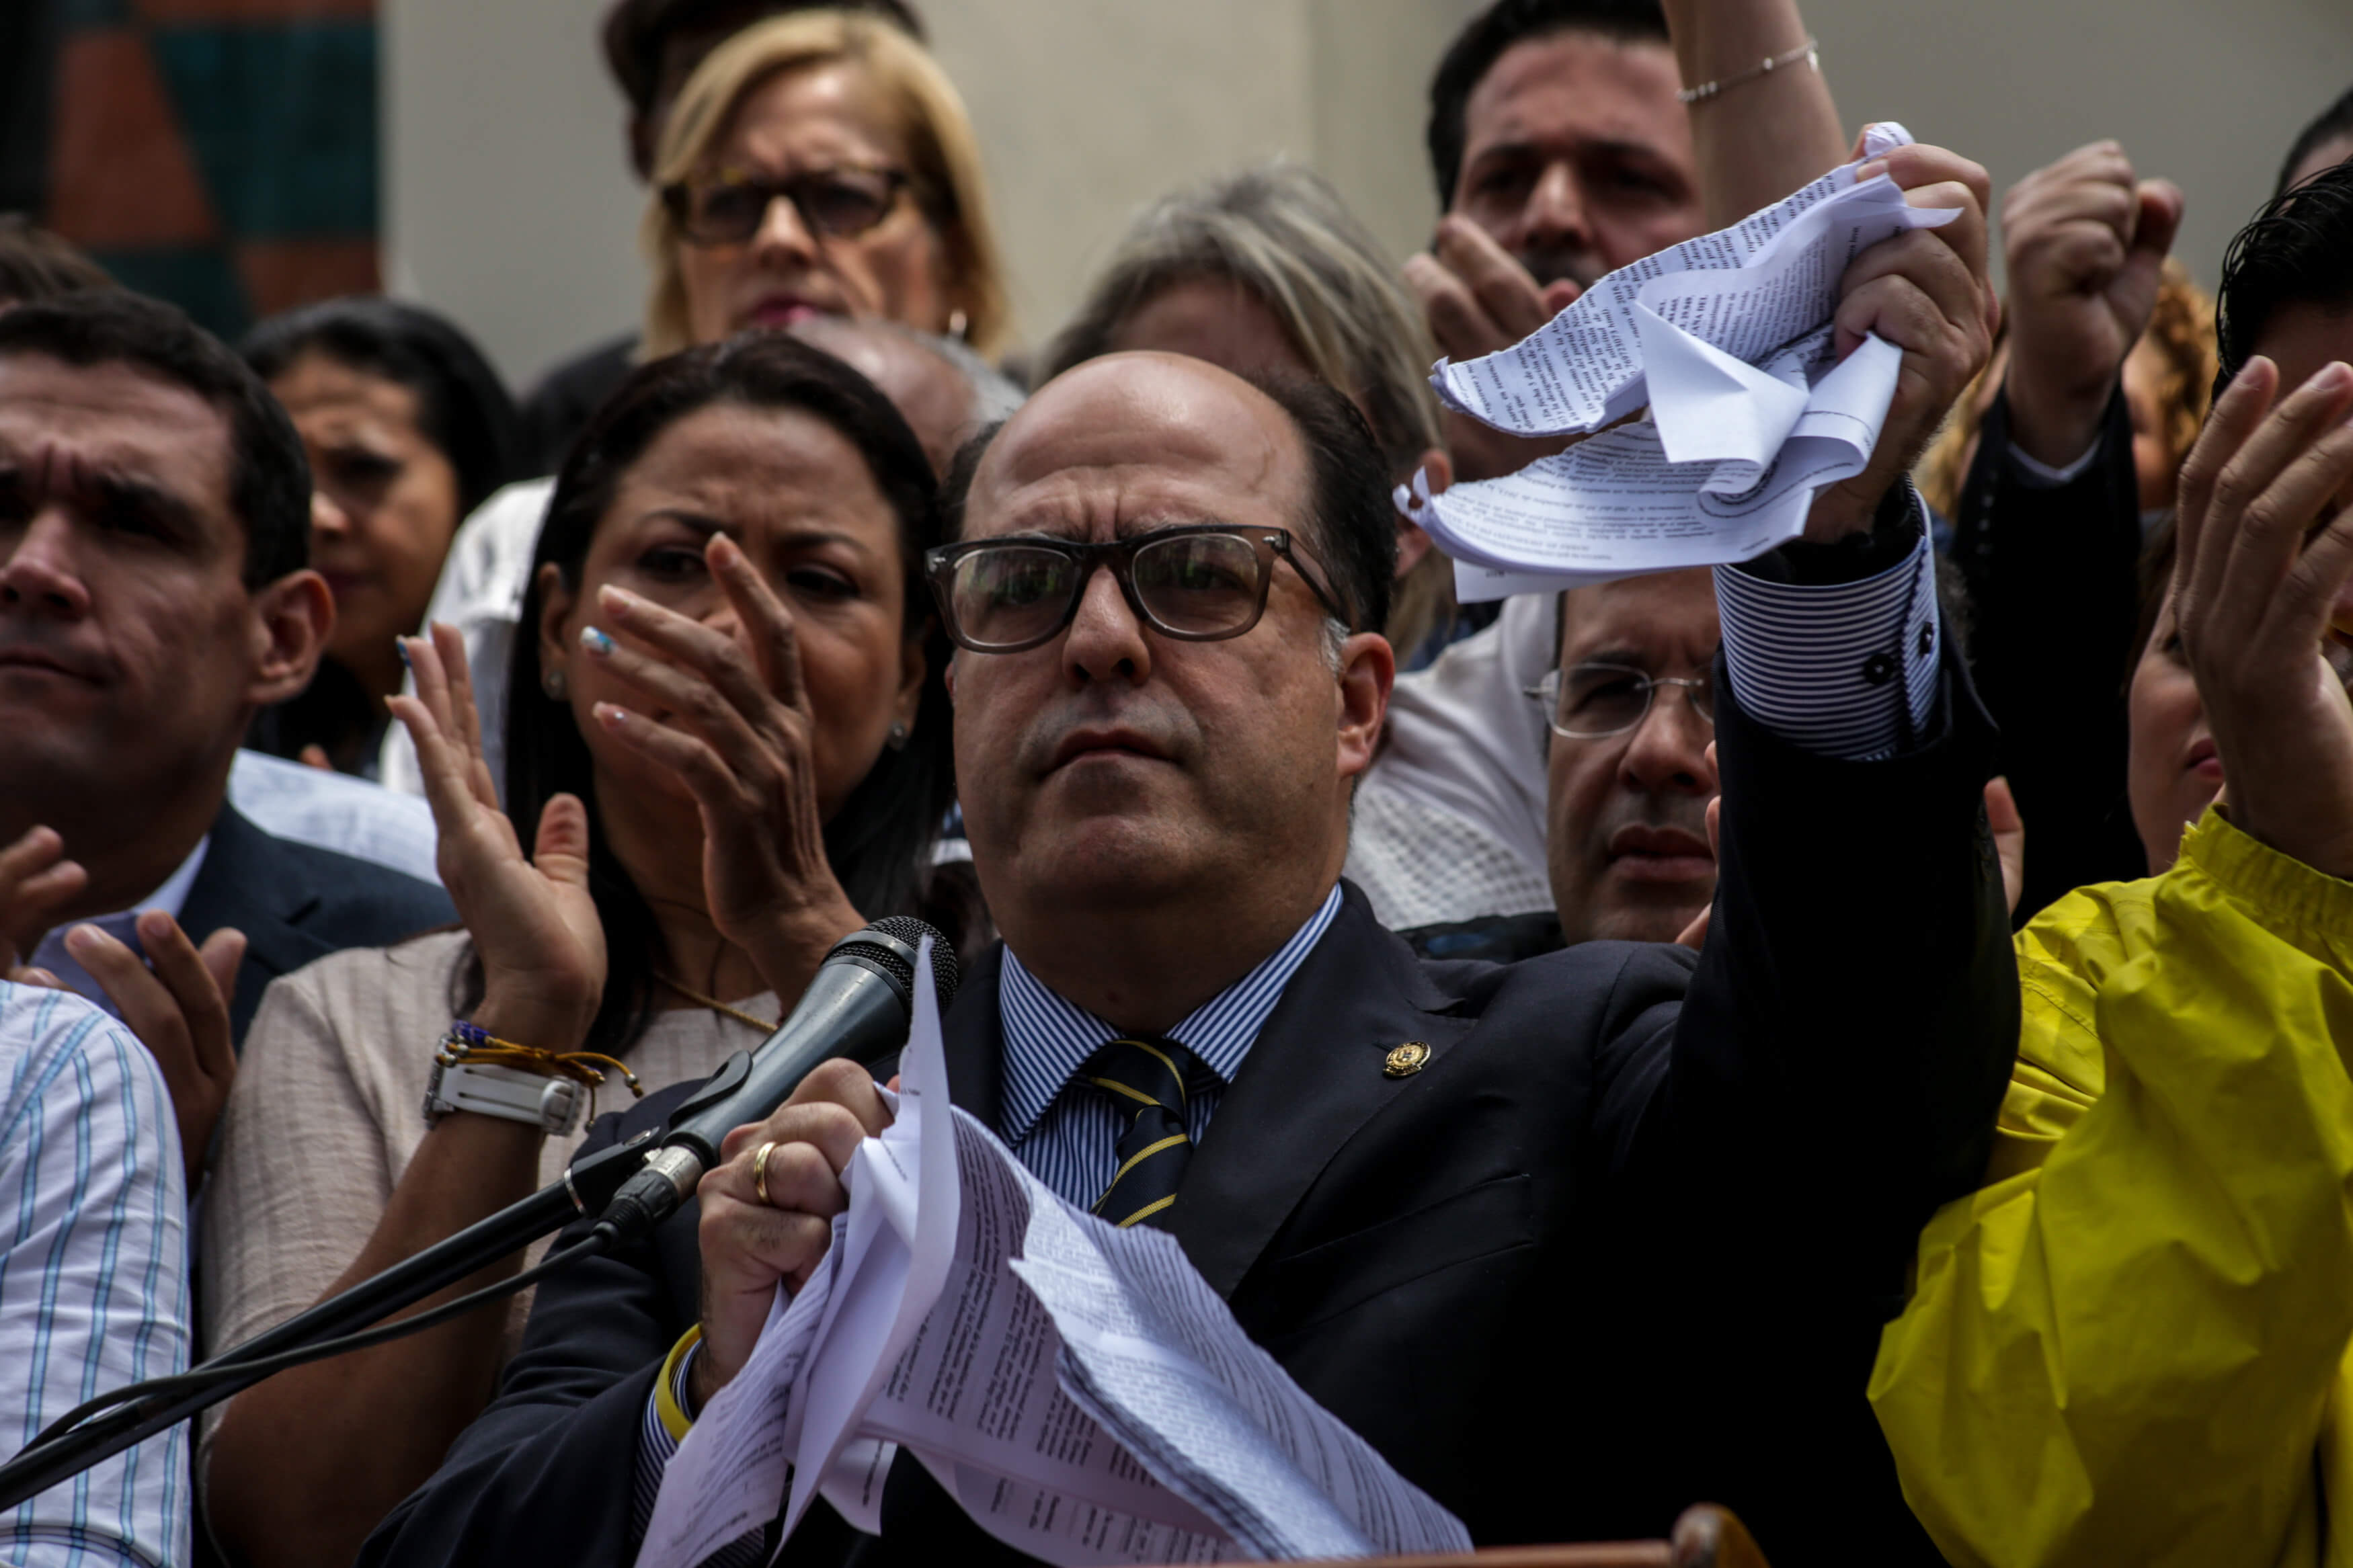 El presidente de la Asamblea Nacional de Venezuela (AN), el opositor Julio Borges, rompe en pedazos la sentencia del Tribunal Supremo, que calificó de "basura" durante una rueda de prensa, desde el Palacio Legislativo. (EFE)